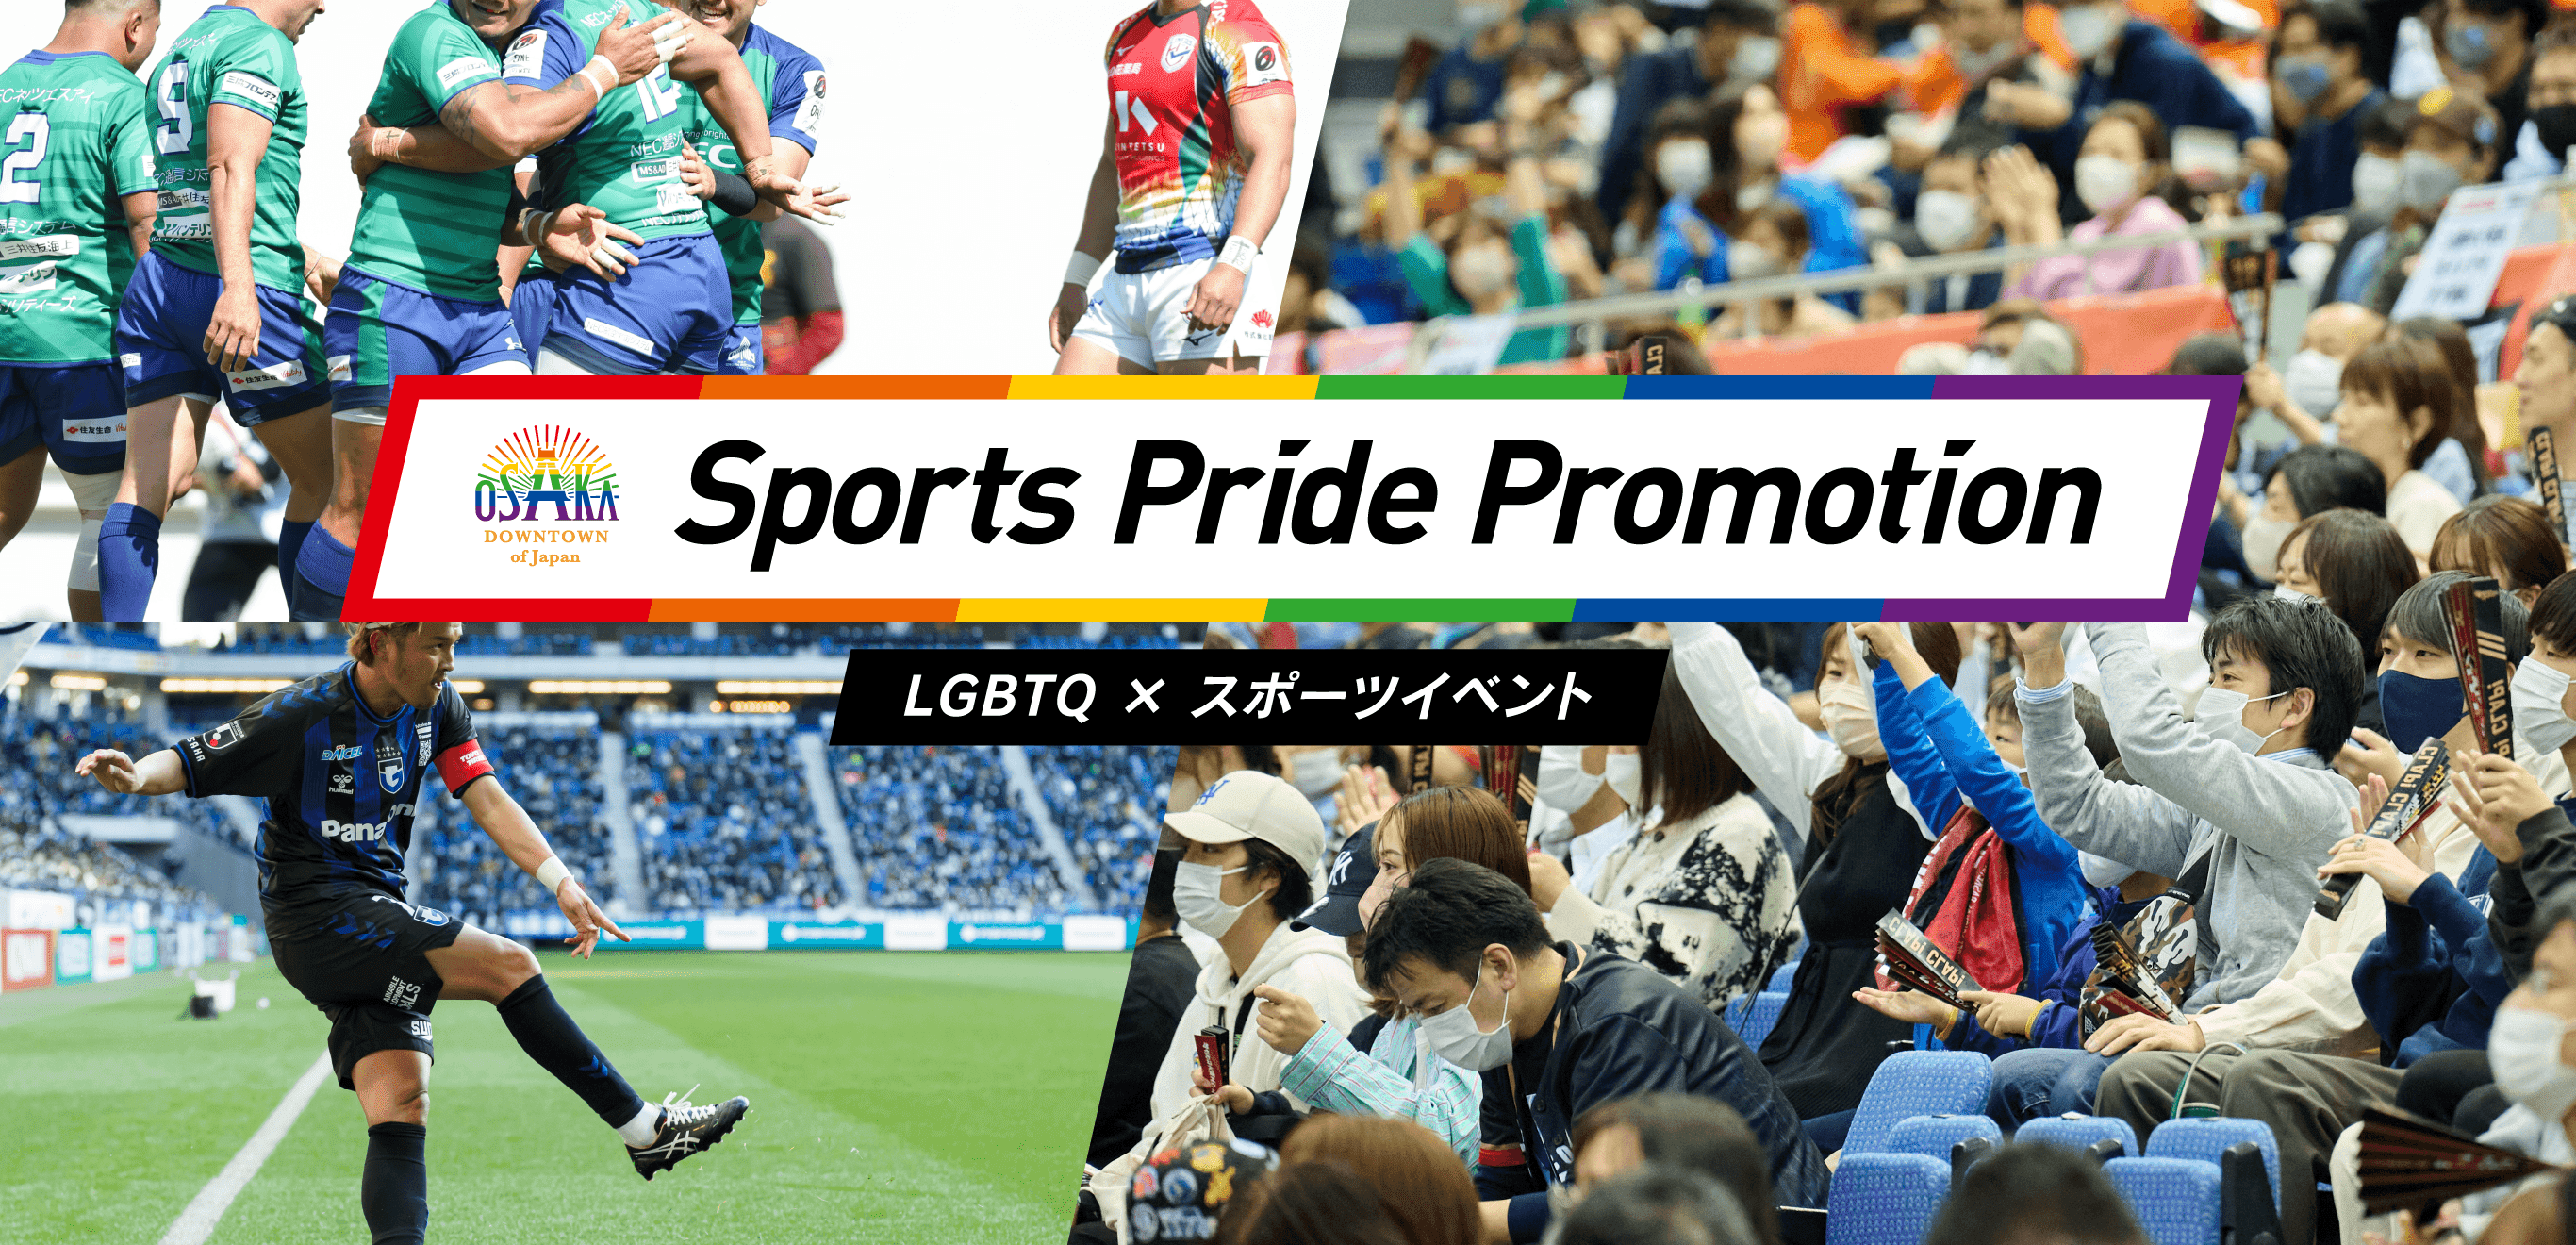 LGBTQ × スポーツイベント